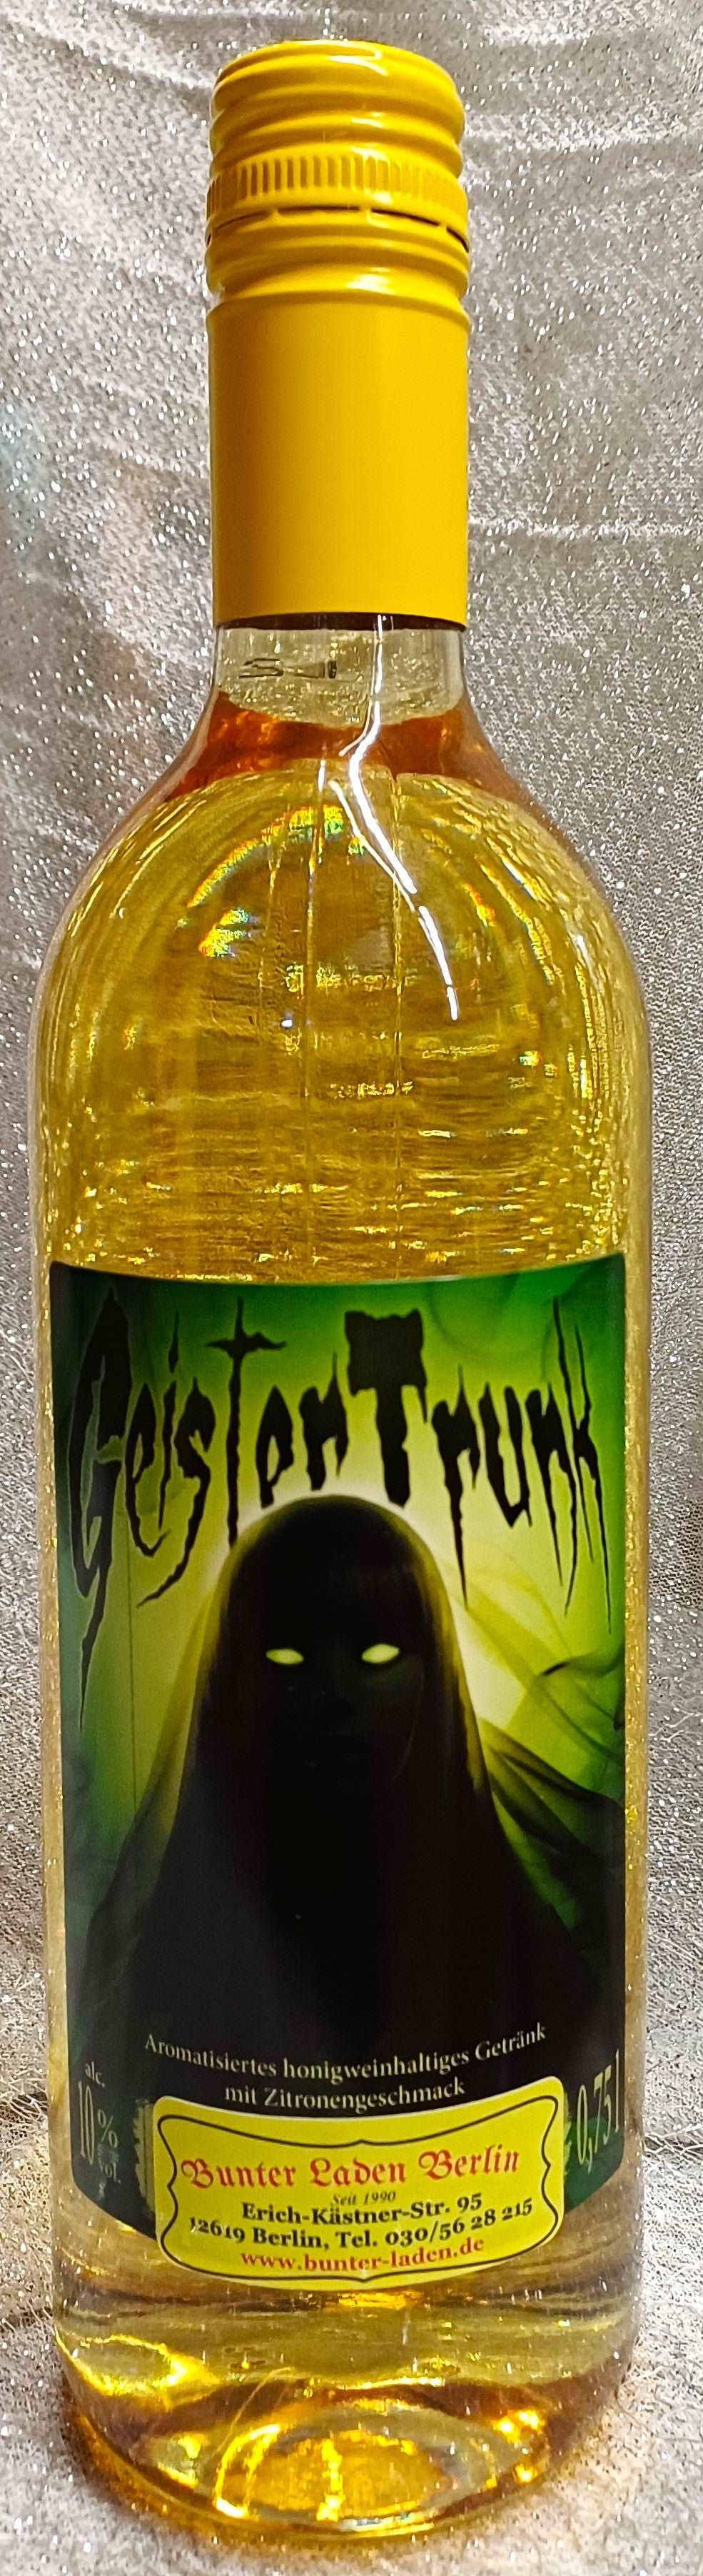 Honigwein-Met, der Trank der Götter, 0,75l